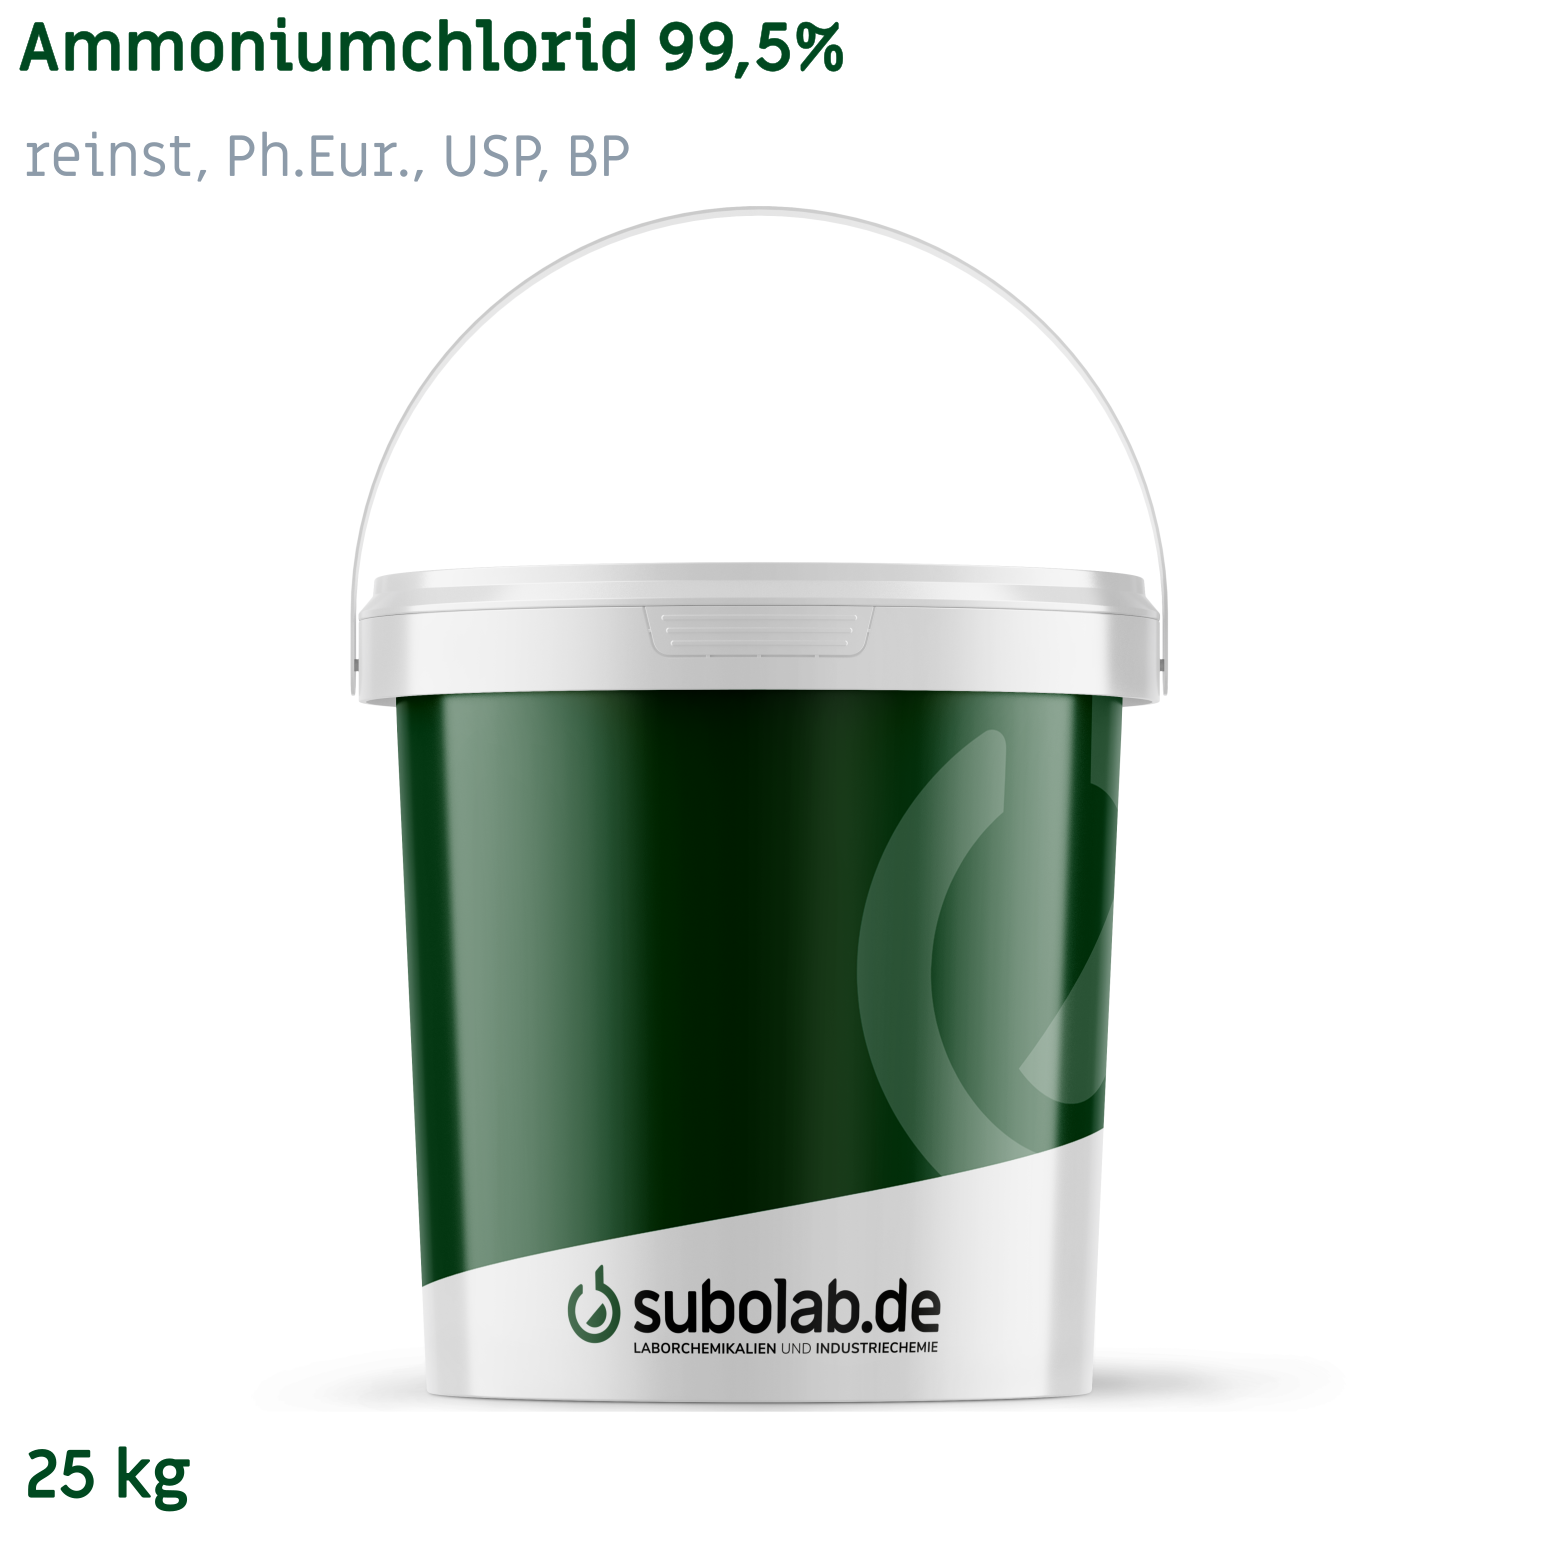 Bild von Ammoniumchlorid 99,5% reinst, Ph.Eur., USP, BP (25 kg)